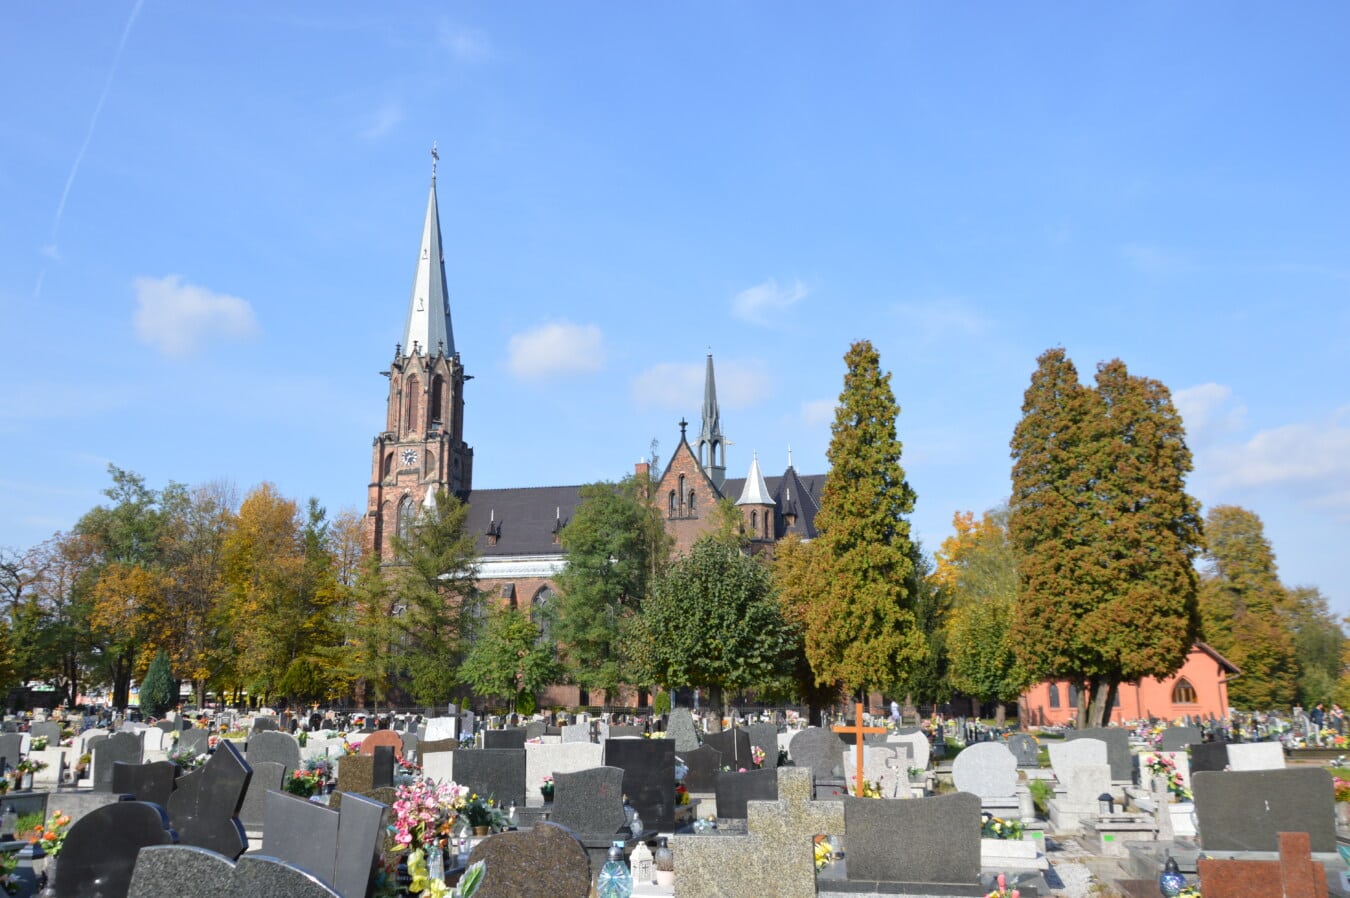 Pologne, cimetière, Christian, cathédrale, steeple, Pierre tombale, gothique, tombe, église, architecture